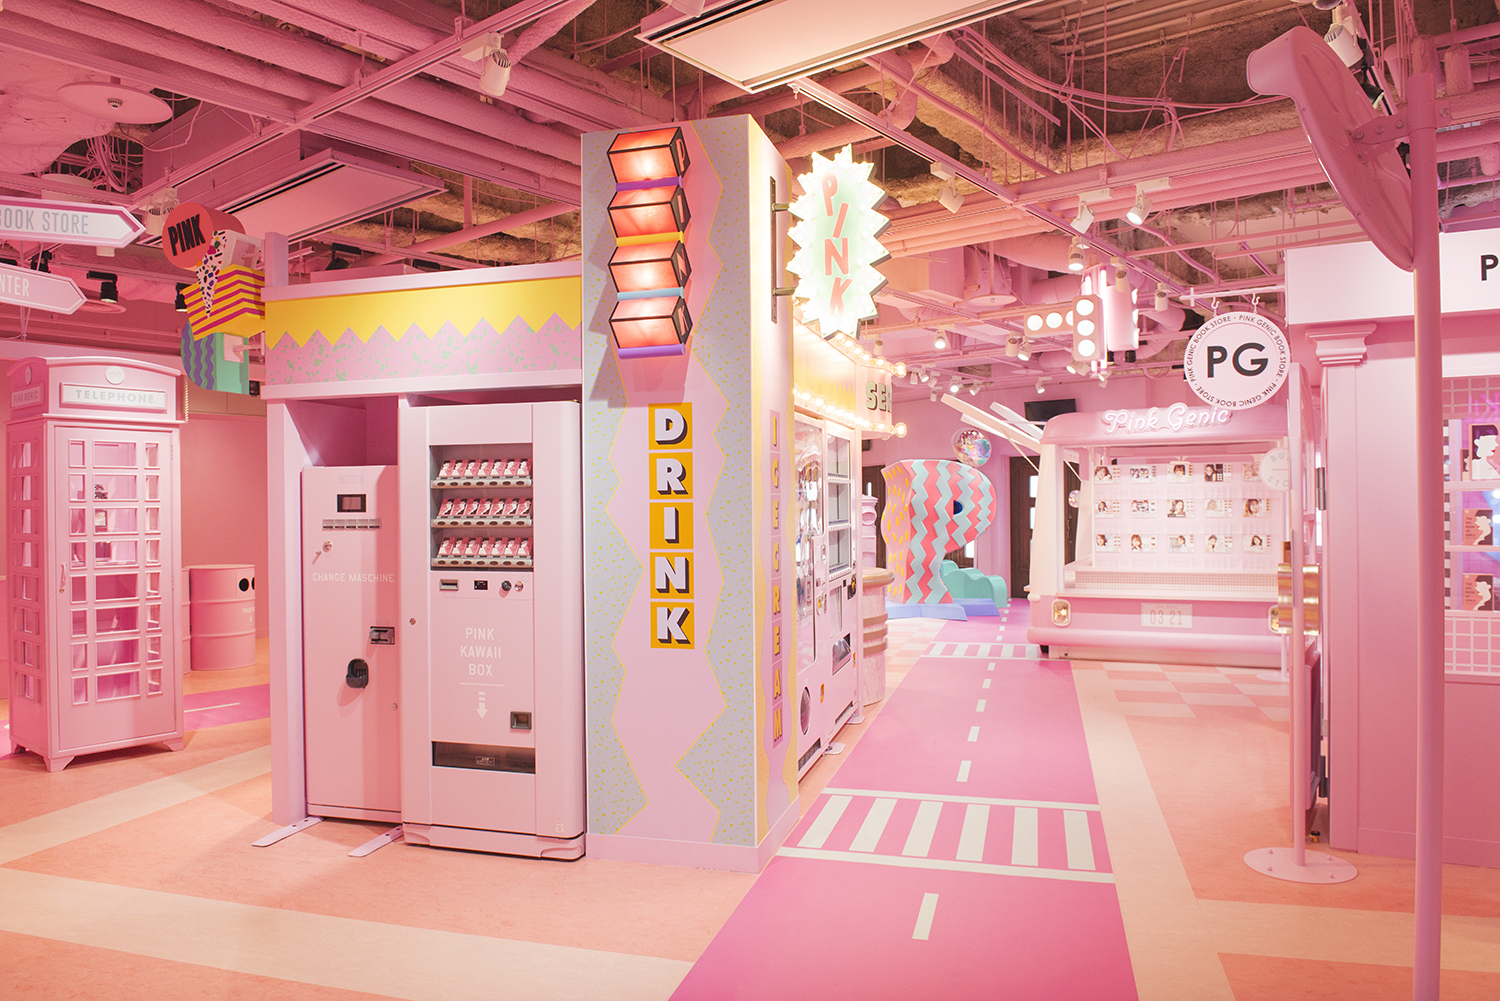 フリューが運営する せかいいち かわいい プリのお店 がコンセプトのプリ機専門店 Moreru Mignon 舞浜イクスピアリ店 Pink Genic な店舗を初公開 フリュー株式会社のプレスリリース